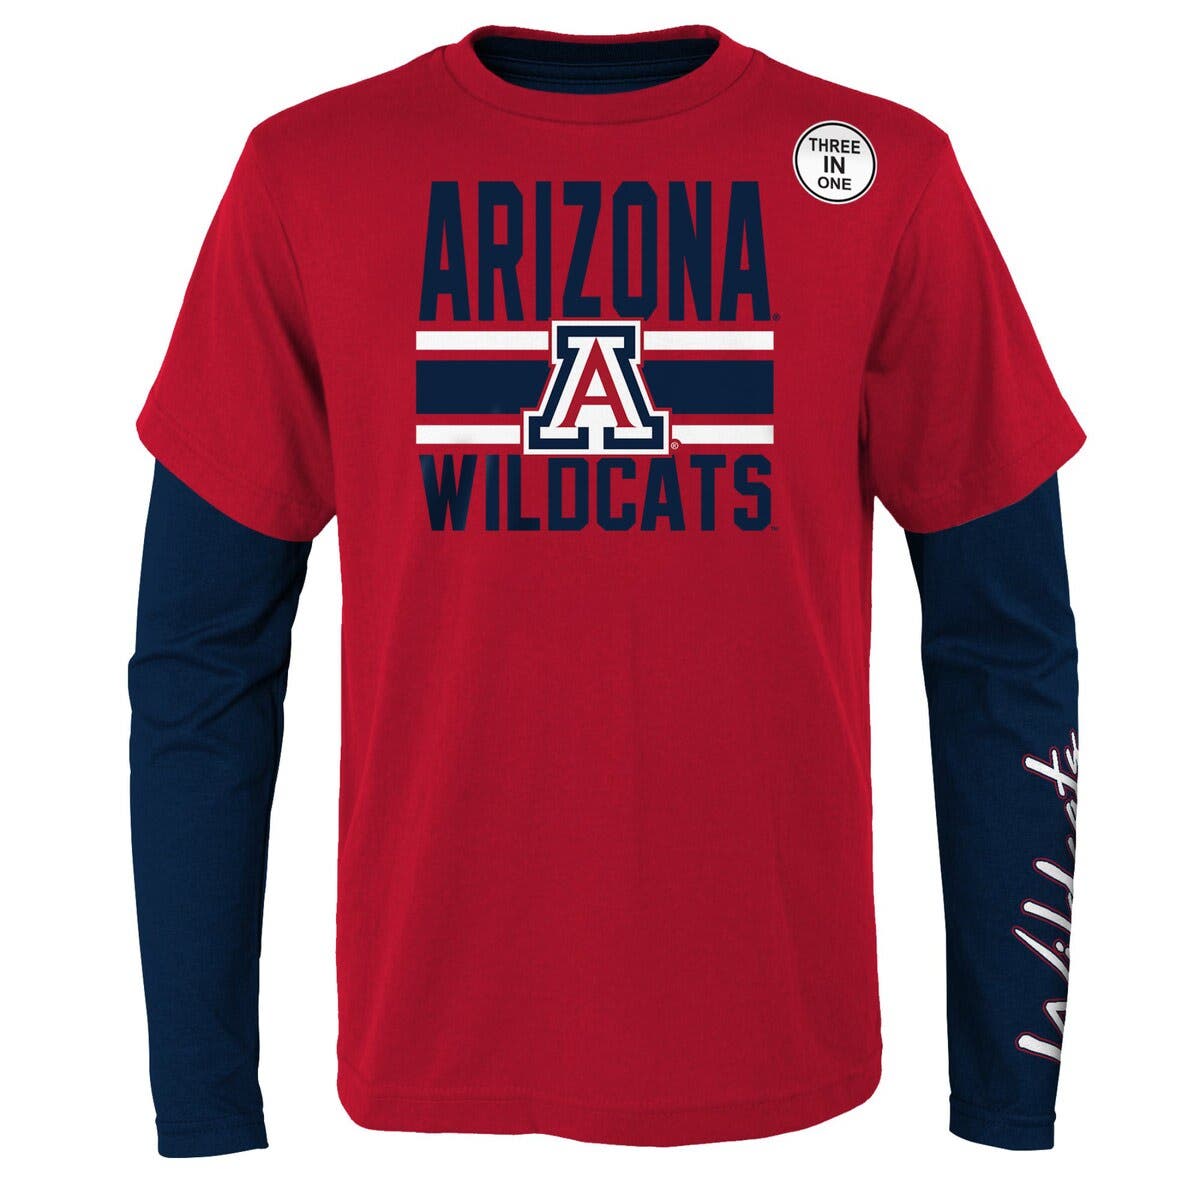 Arizona Wildcats fan jersey